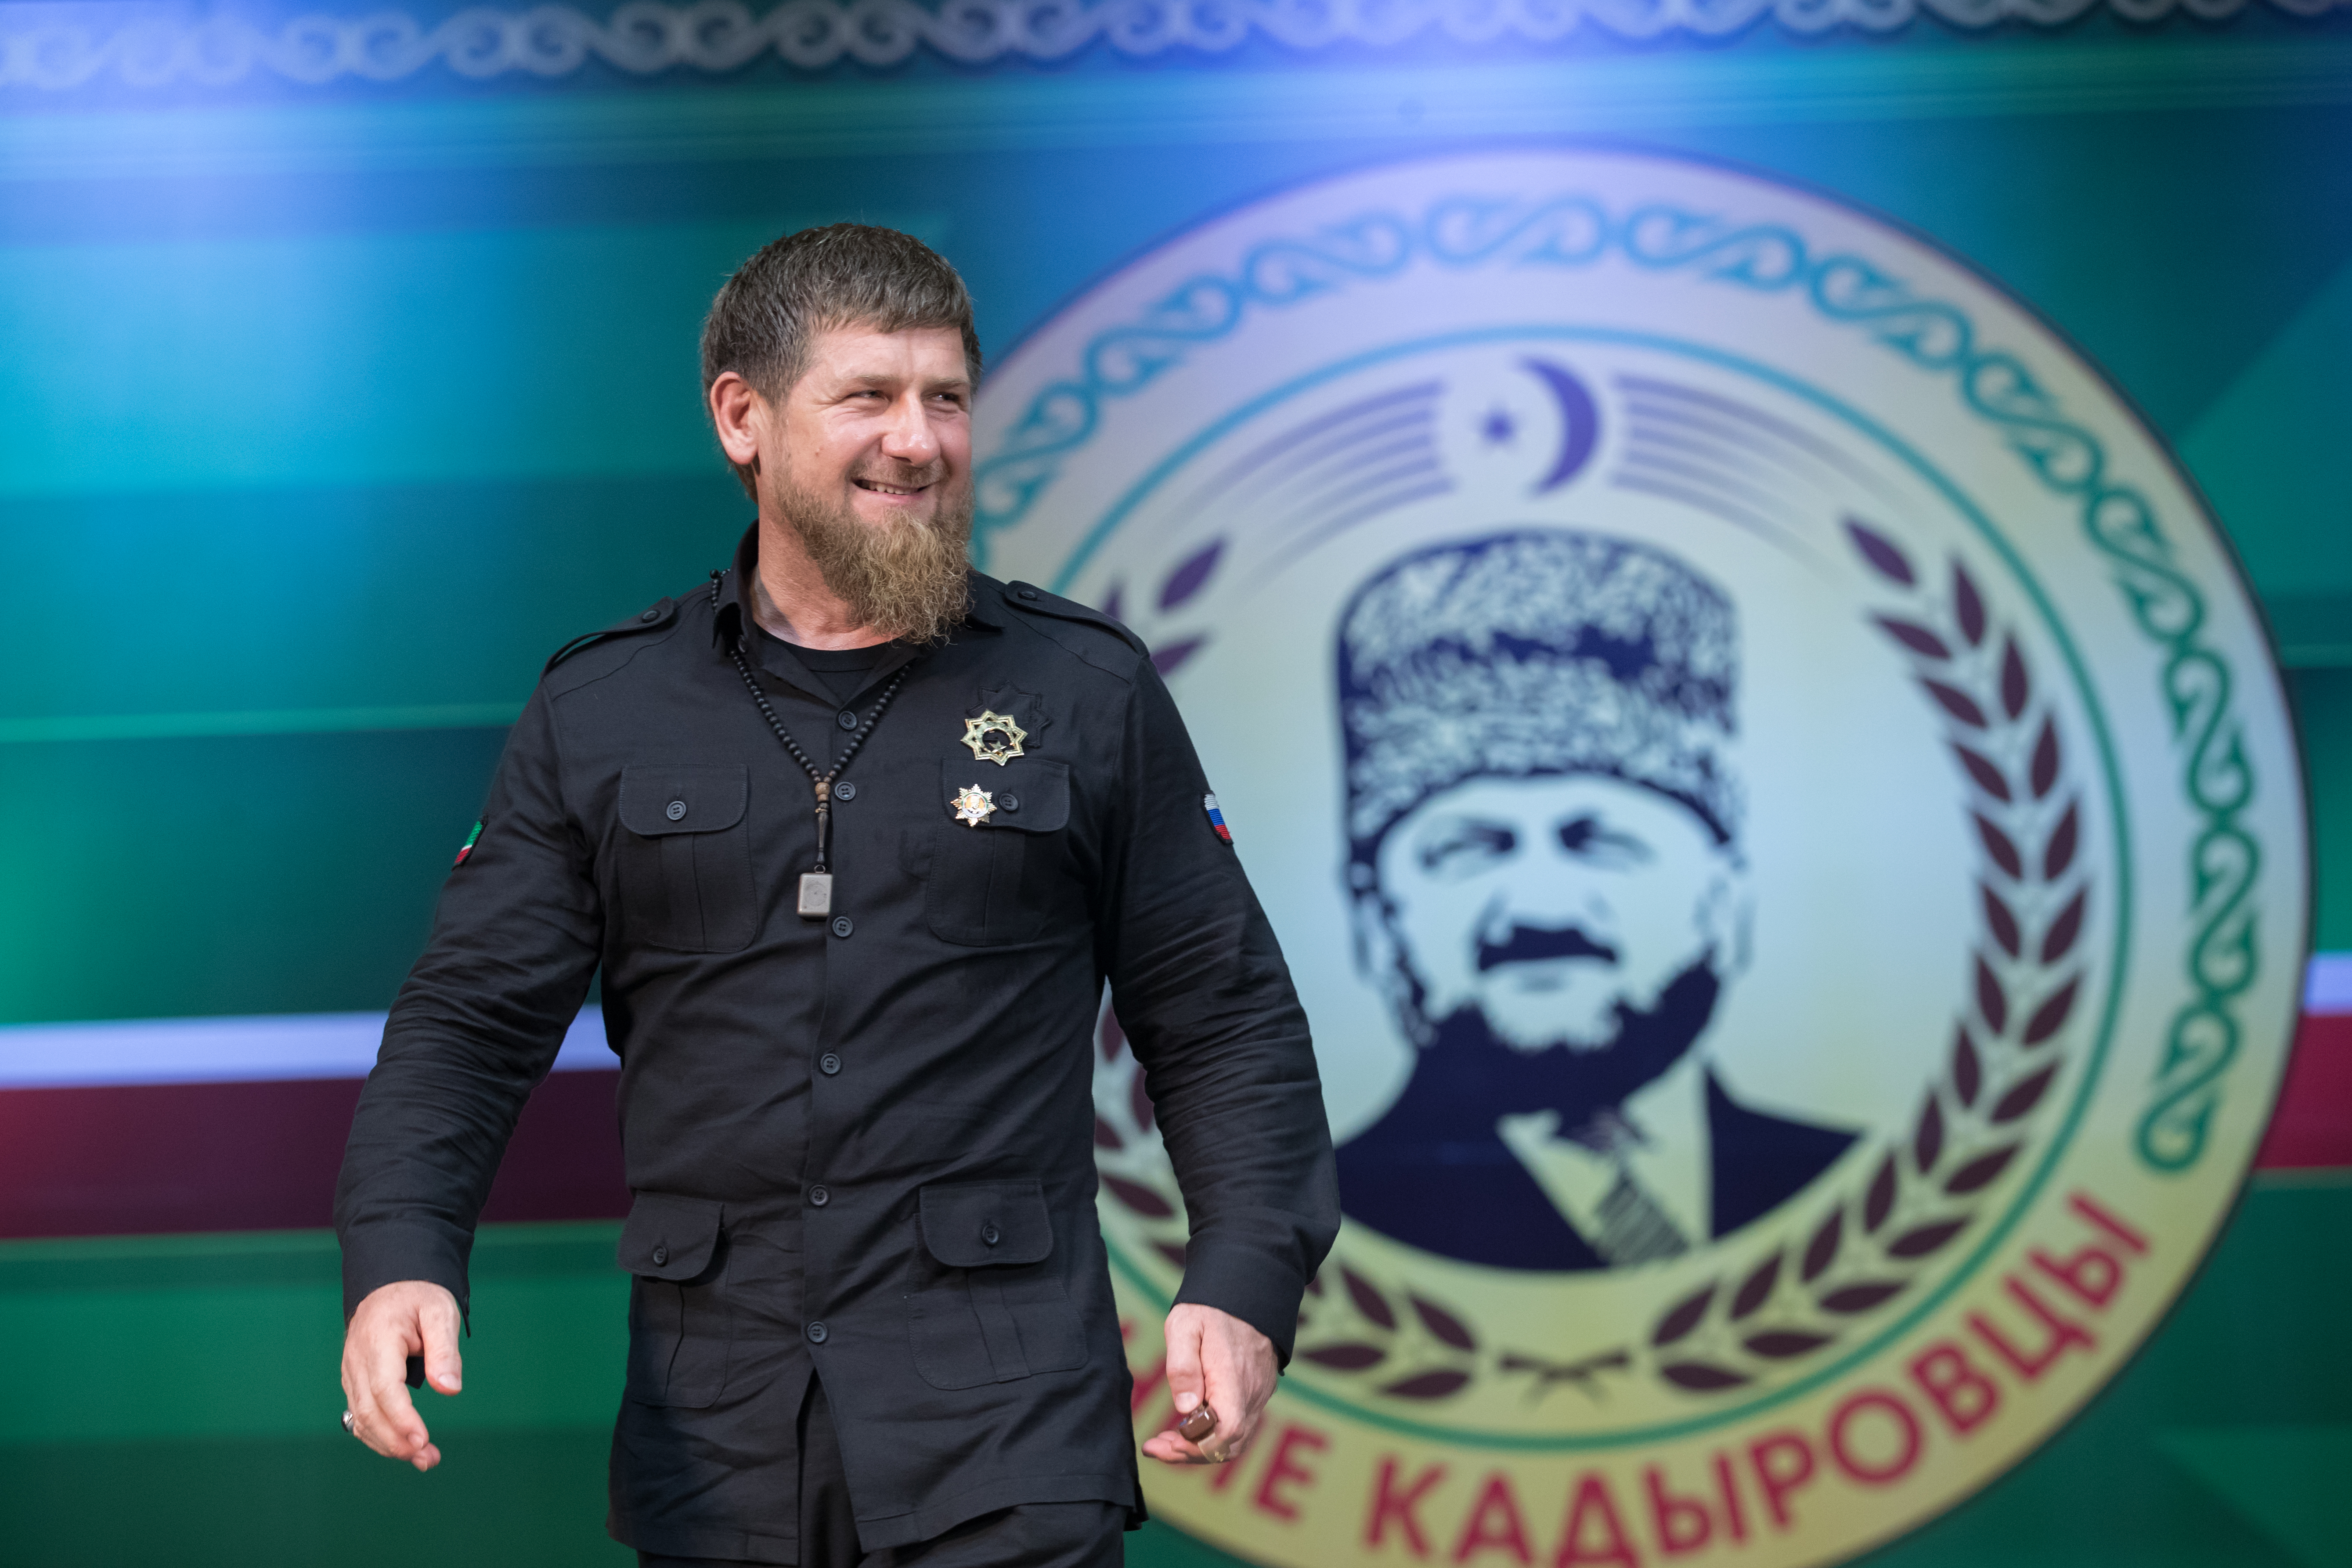 Кадыров рассказал, кого из нижегородцев ждет в спецназ “АХМАТ”